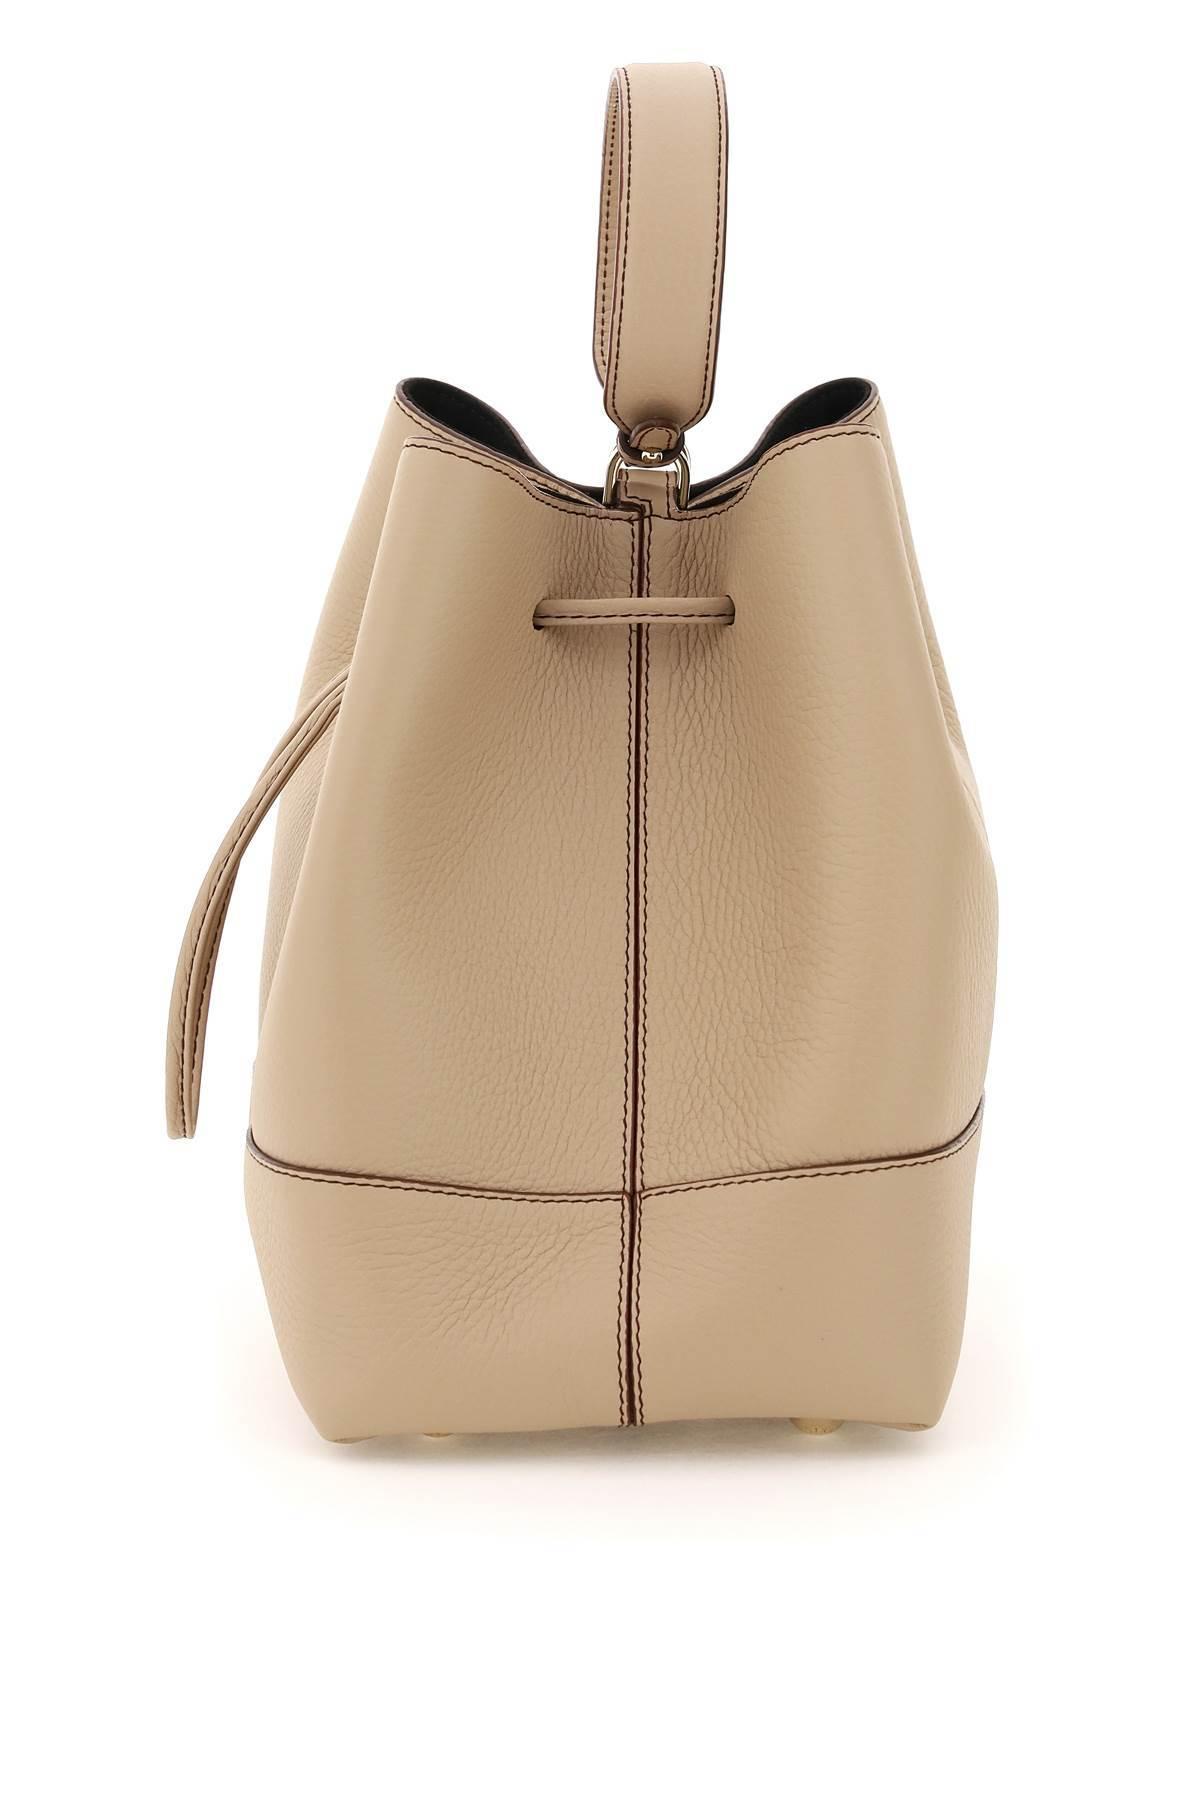 Lana Osette Midi Bag with Grain Leather